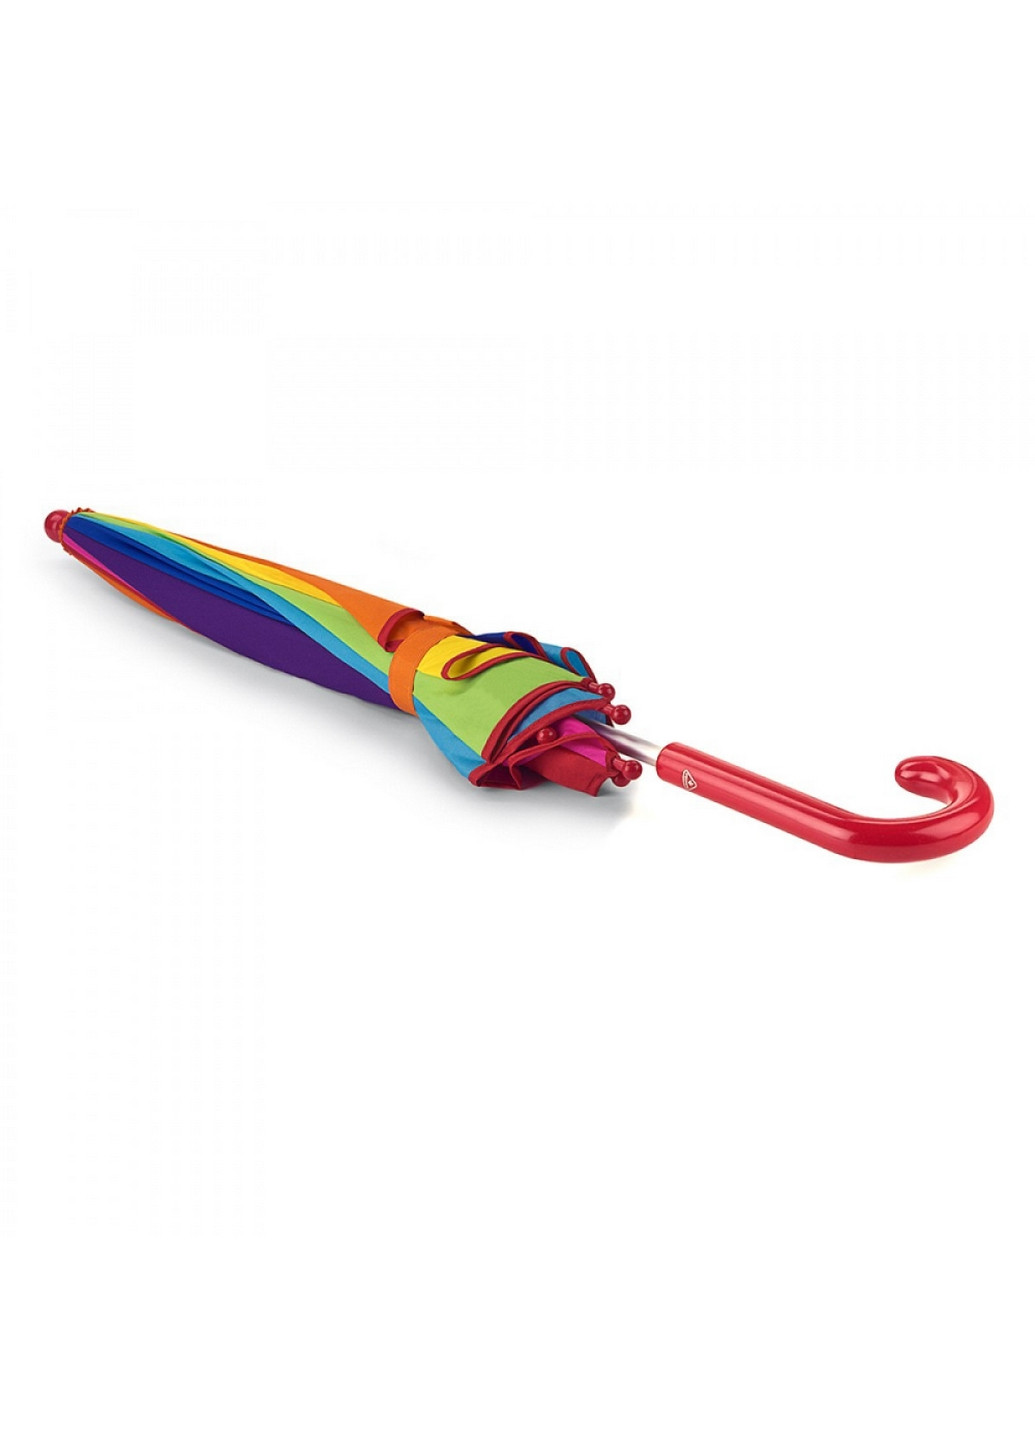 Детский зонт-трость механический 80 см Fulton (260329792)